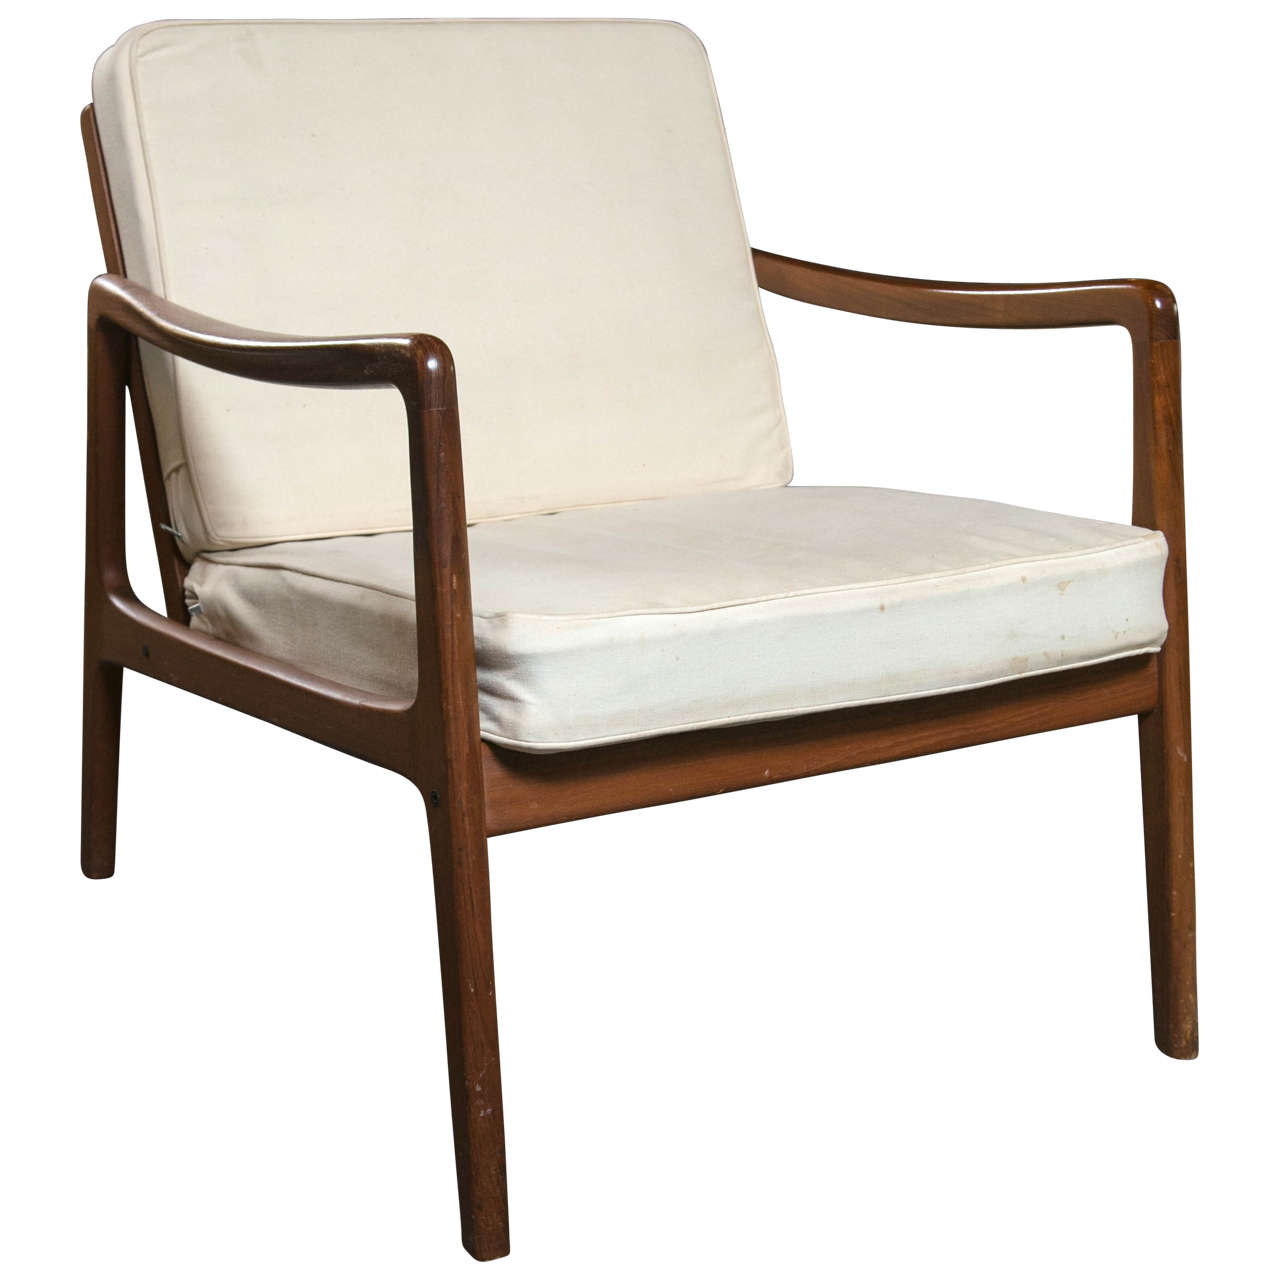 Ole Wanscher Mid-Century Teak Lounge Chair by John Stuart Sleek Streamlined